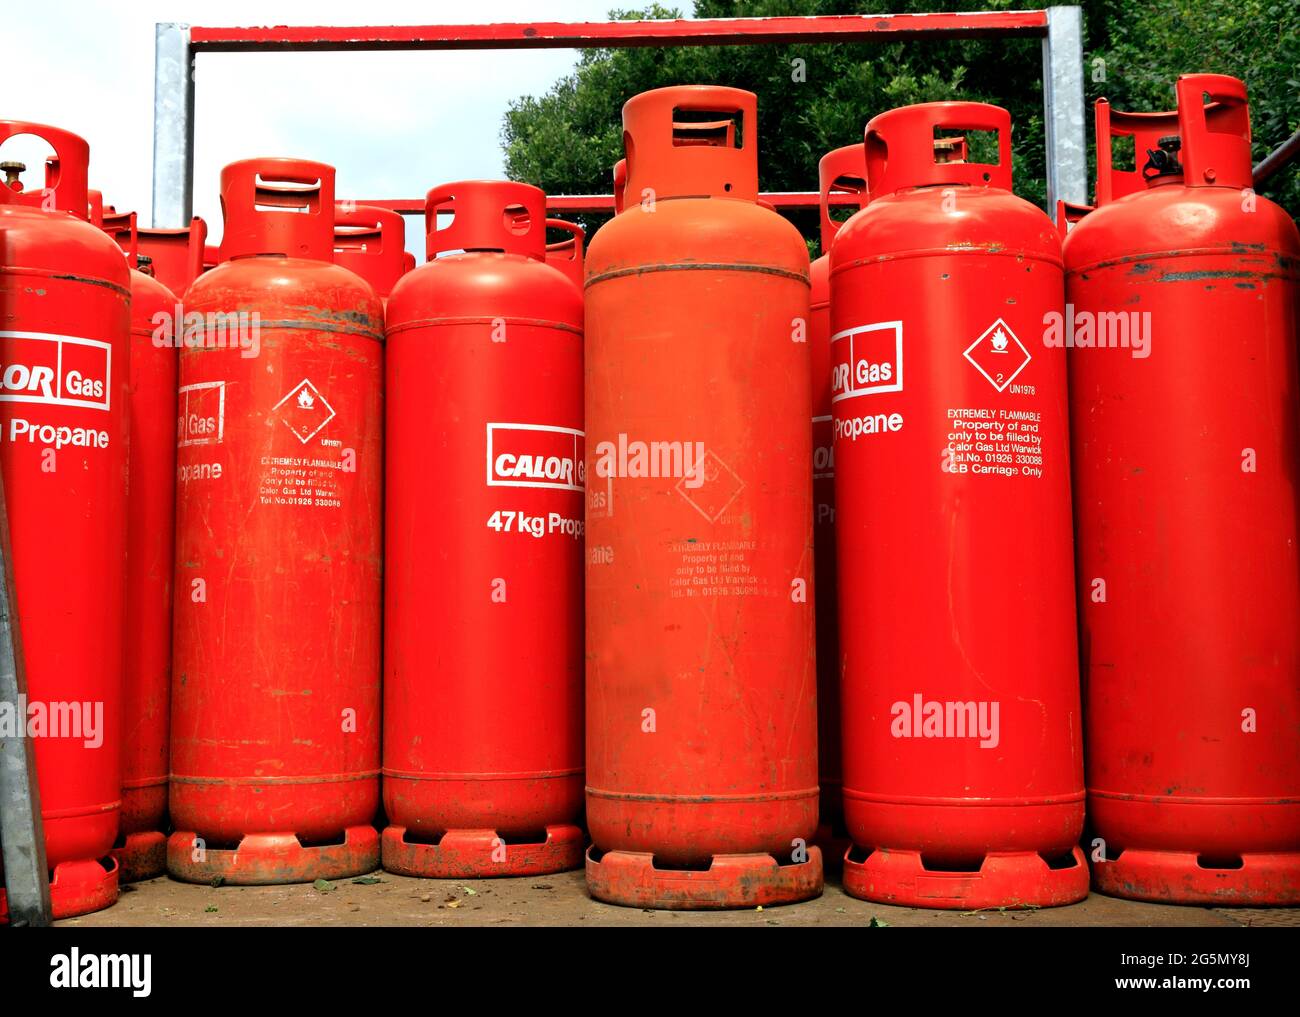 Calor Gas, 47kg bottles,  Propane cylinders, England, UK Stock Photo